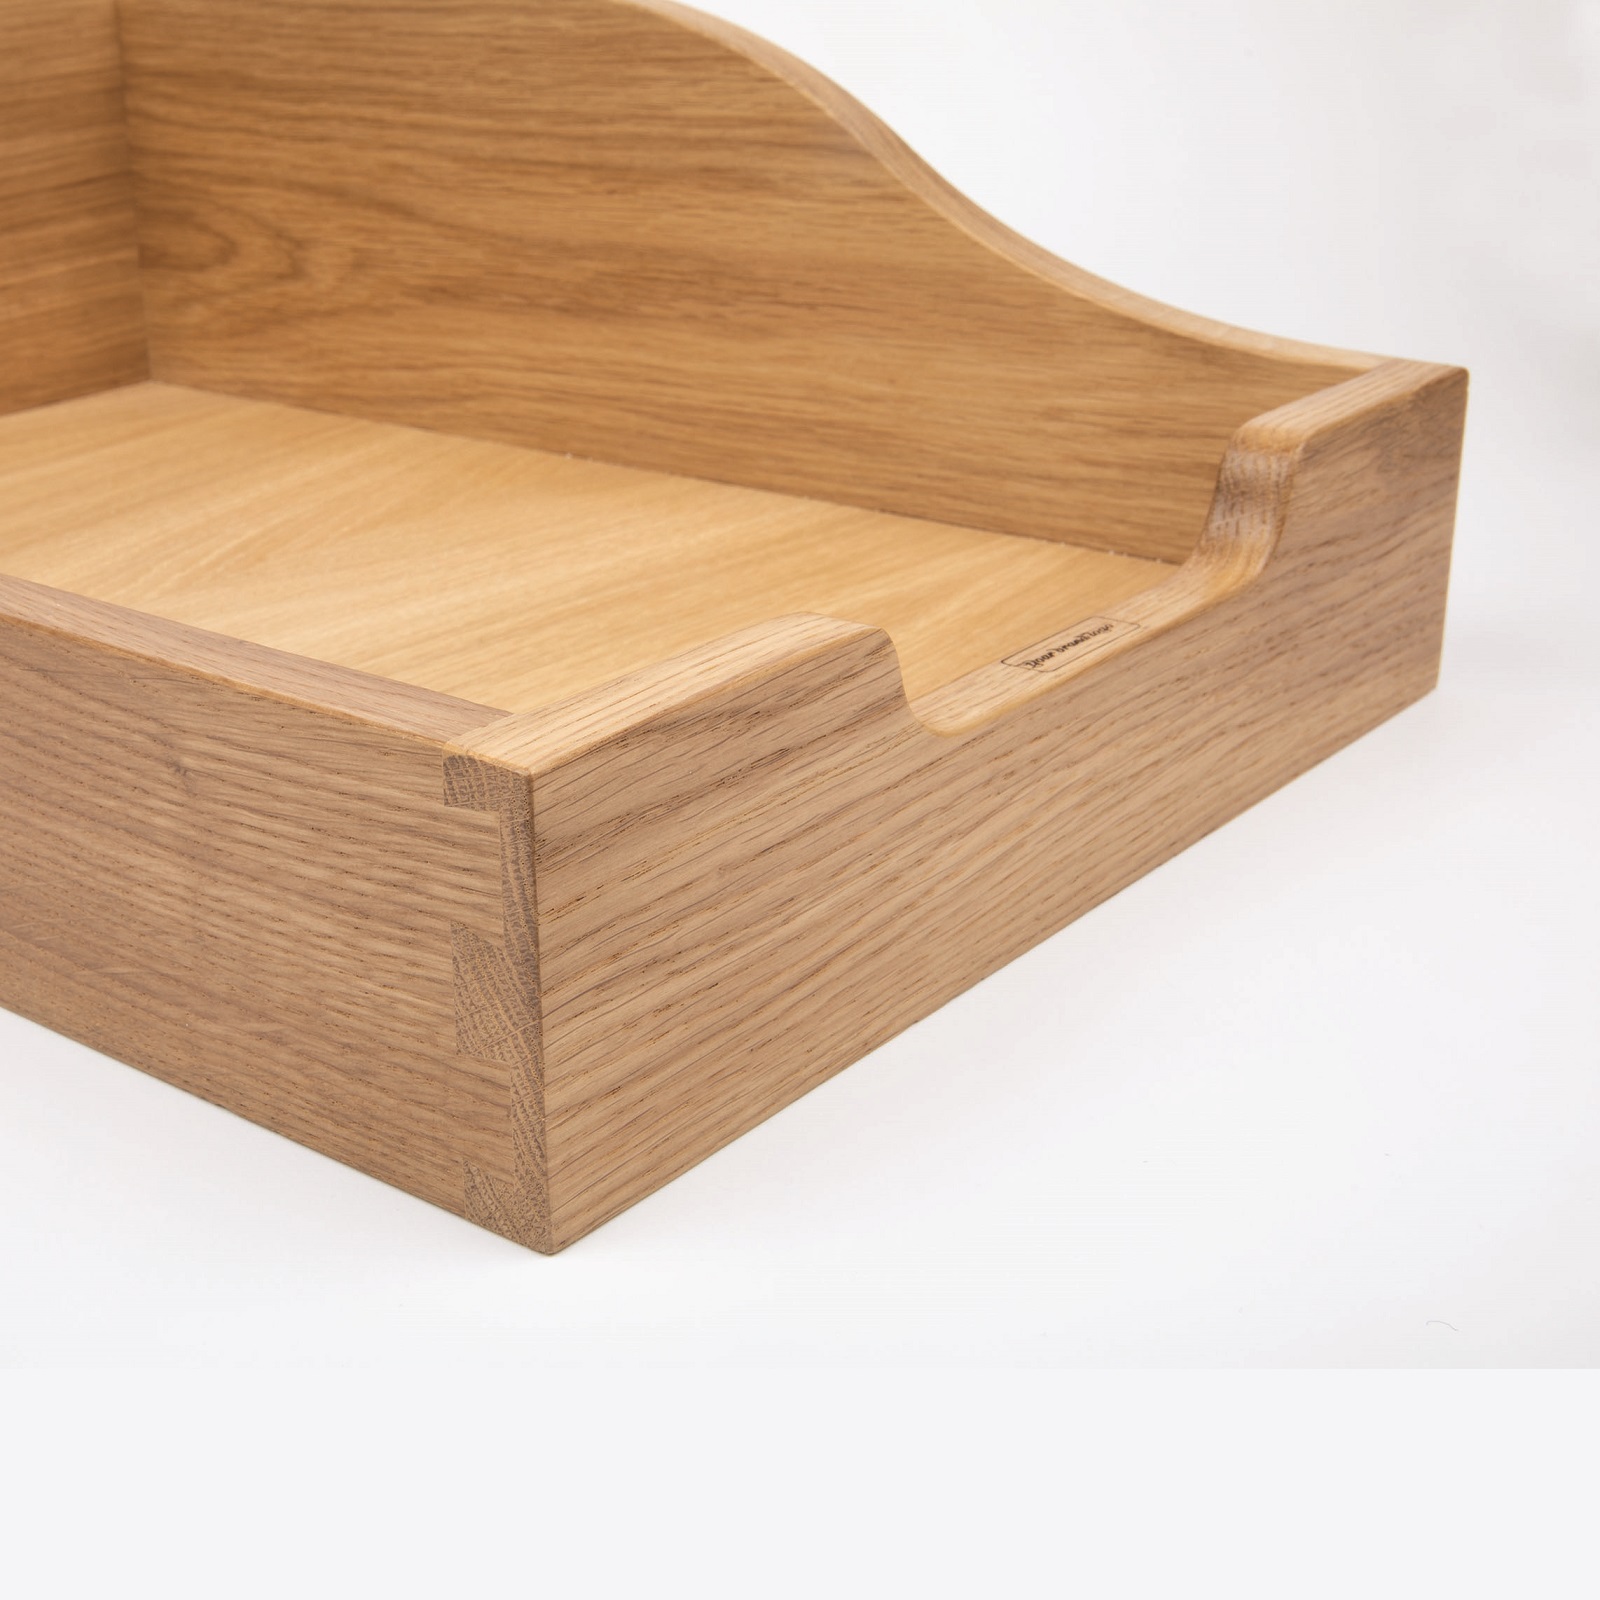 Bespoke timber drawers